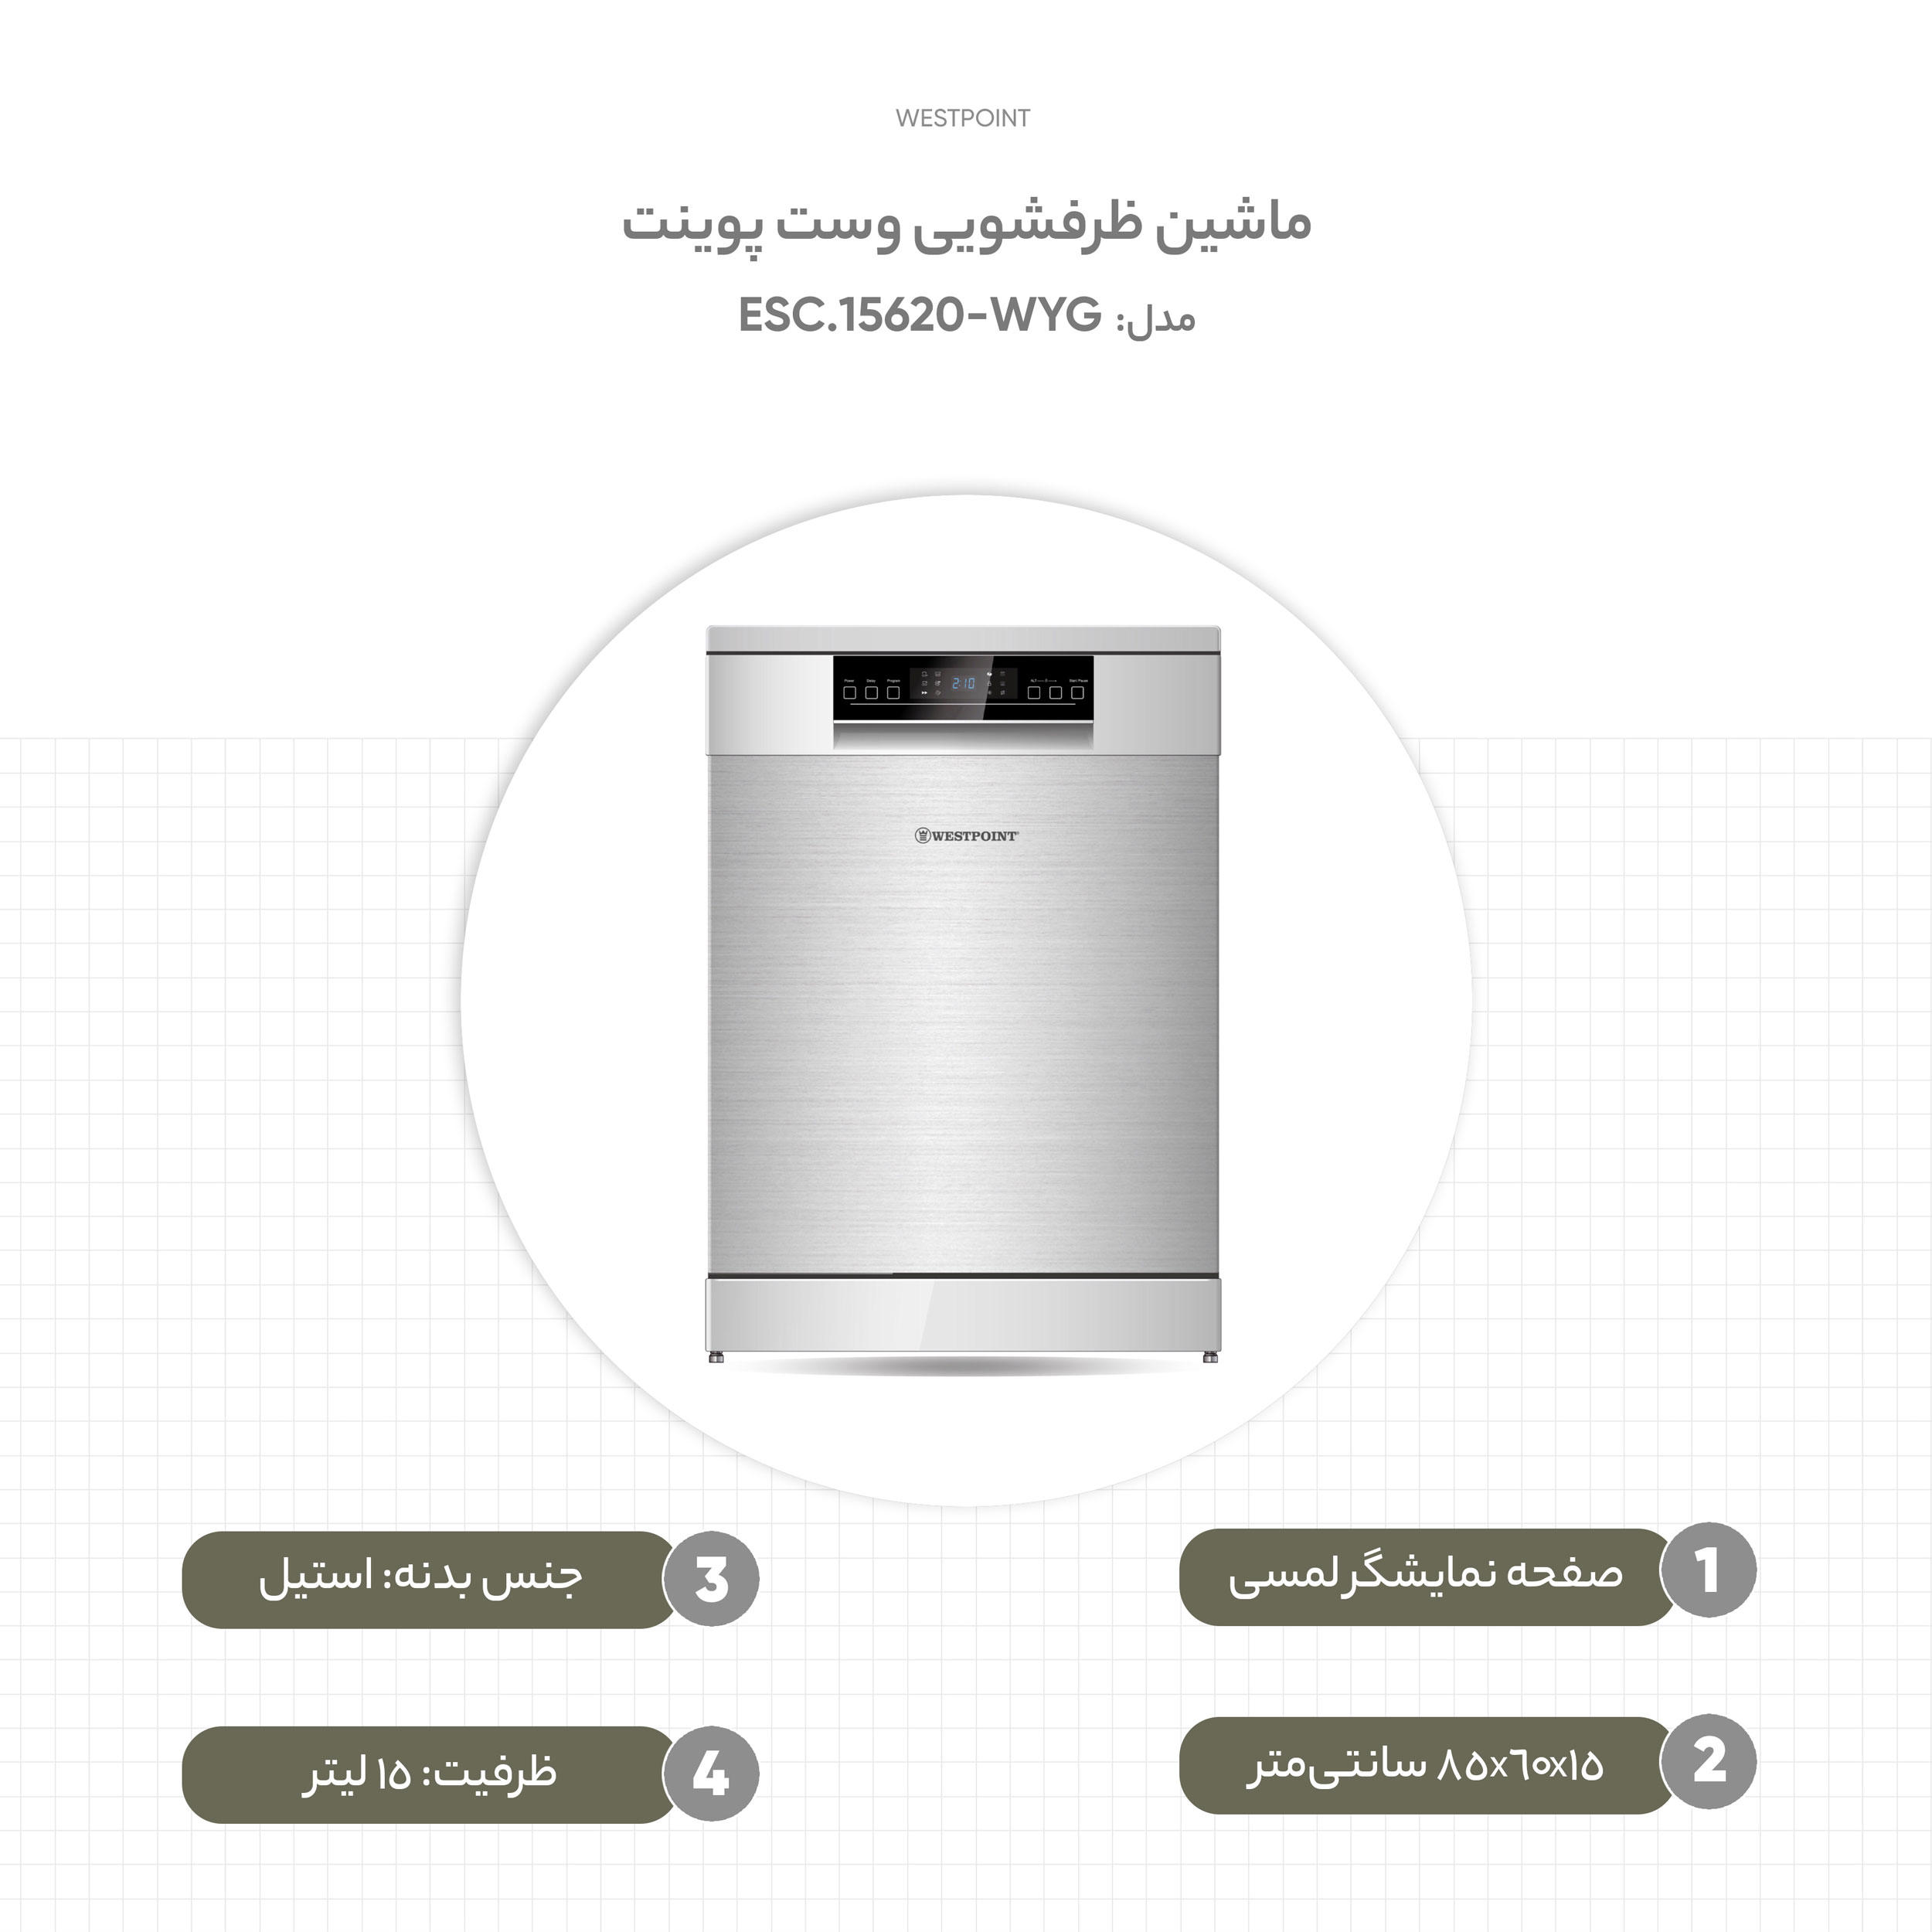 ✓ قیمت و مشخصات ماشین ظرفشویی وست پوینت مدل WYG-15620.ESC - زیراکو ✓